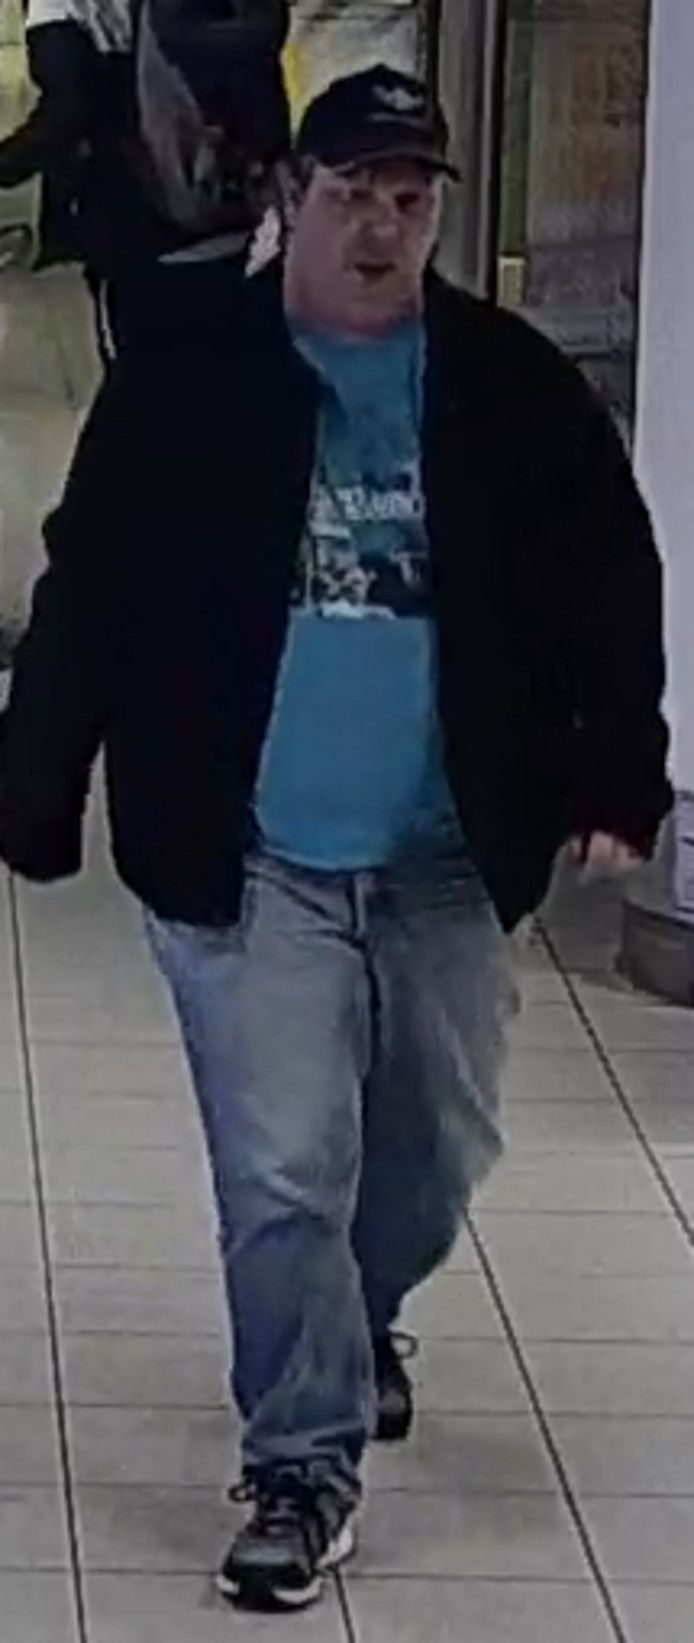 De verdachte man kwam waarschijnlijk zeer recent aan op Schiphol, blijkt uit camerabeelden.